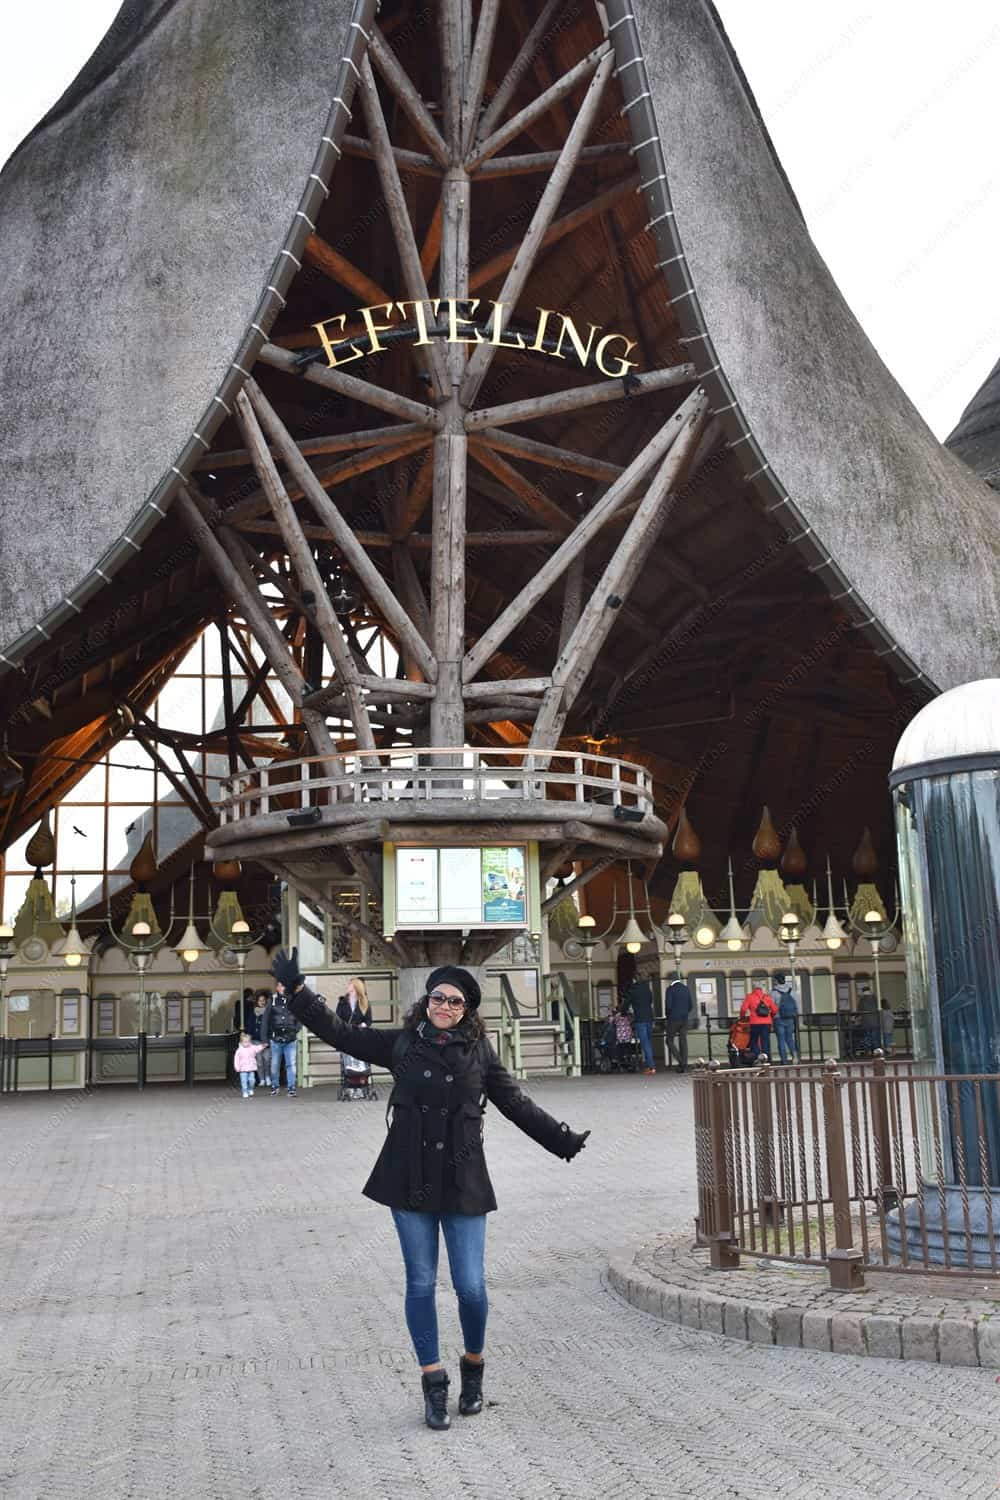 Efteling Theme Park